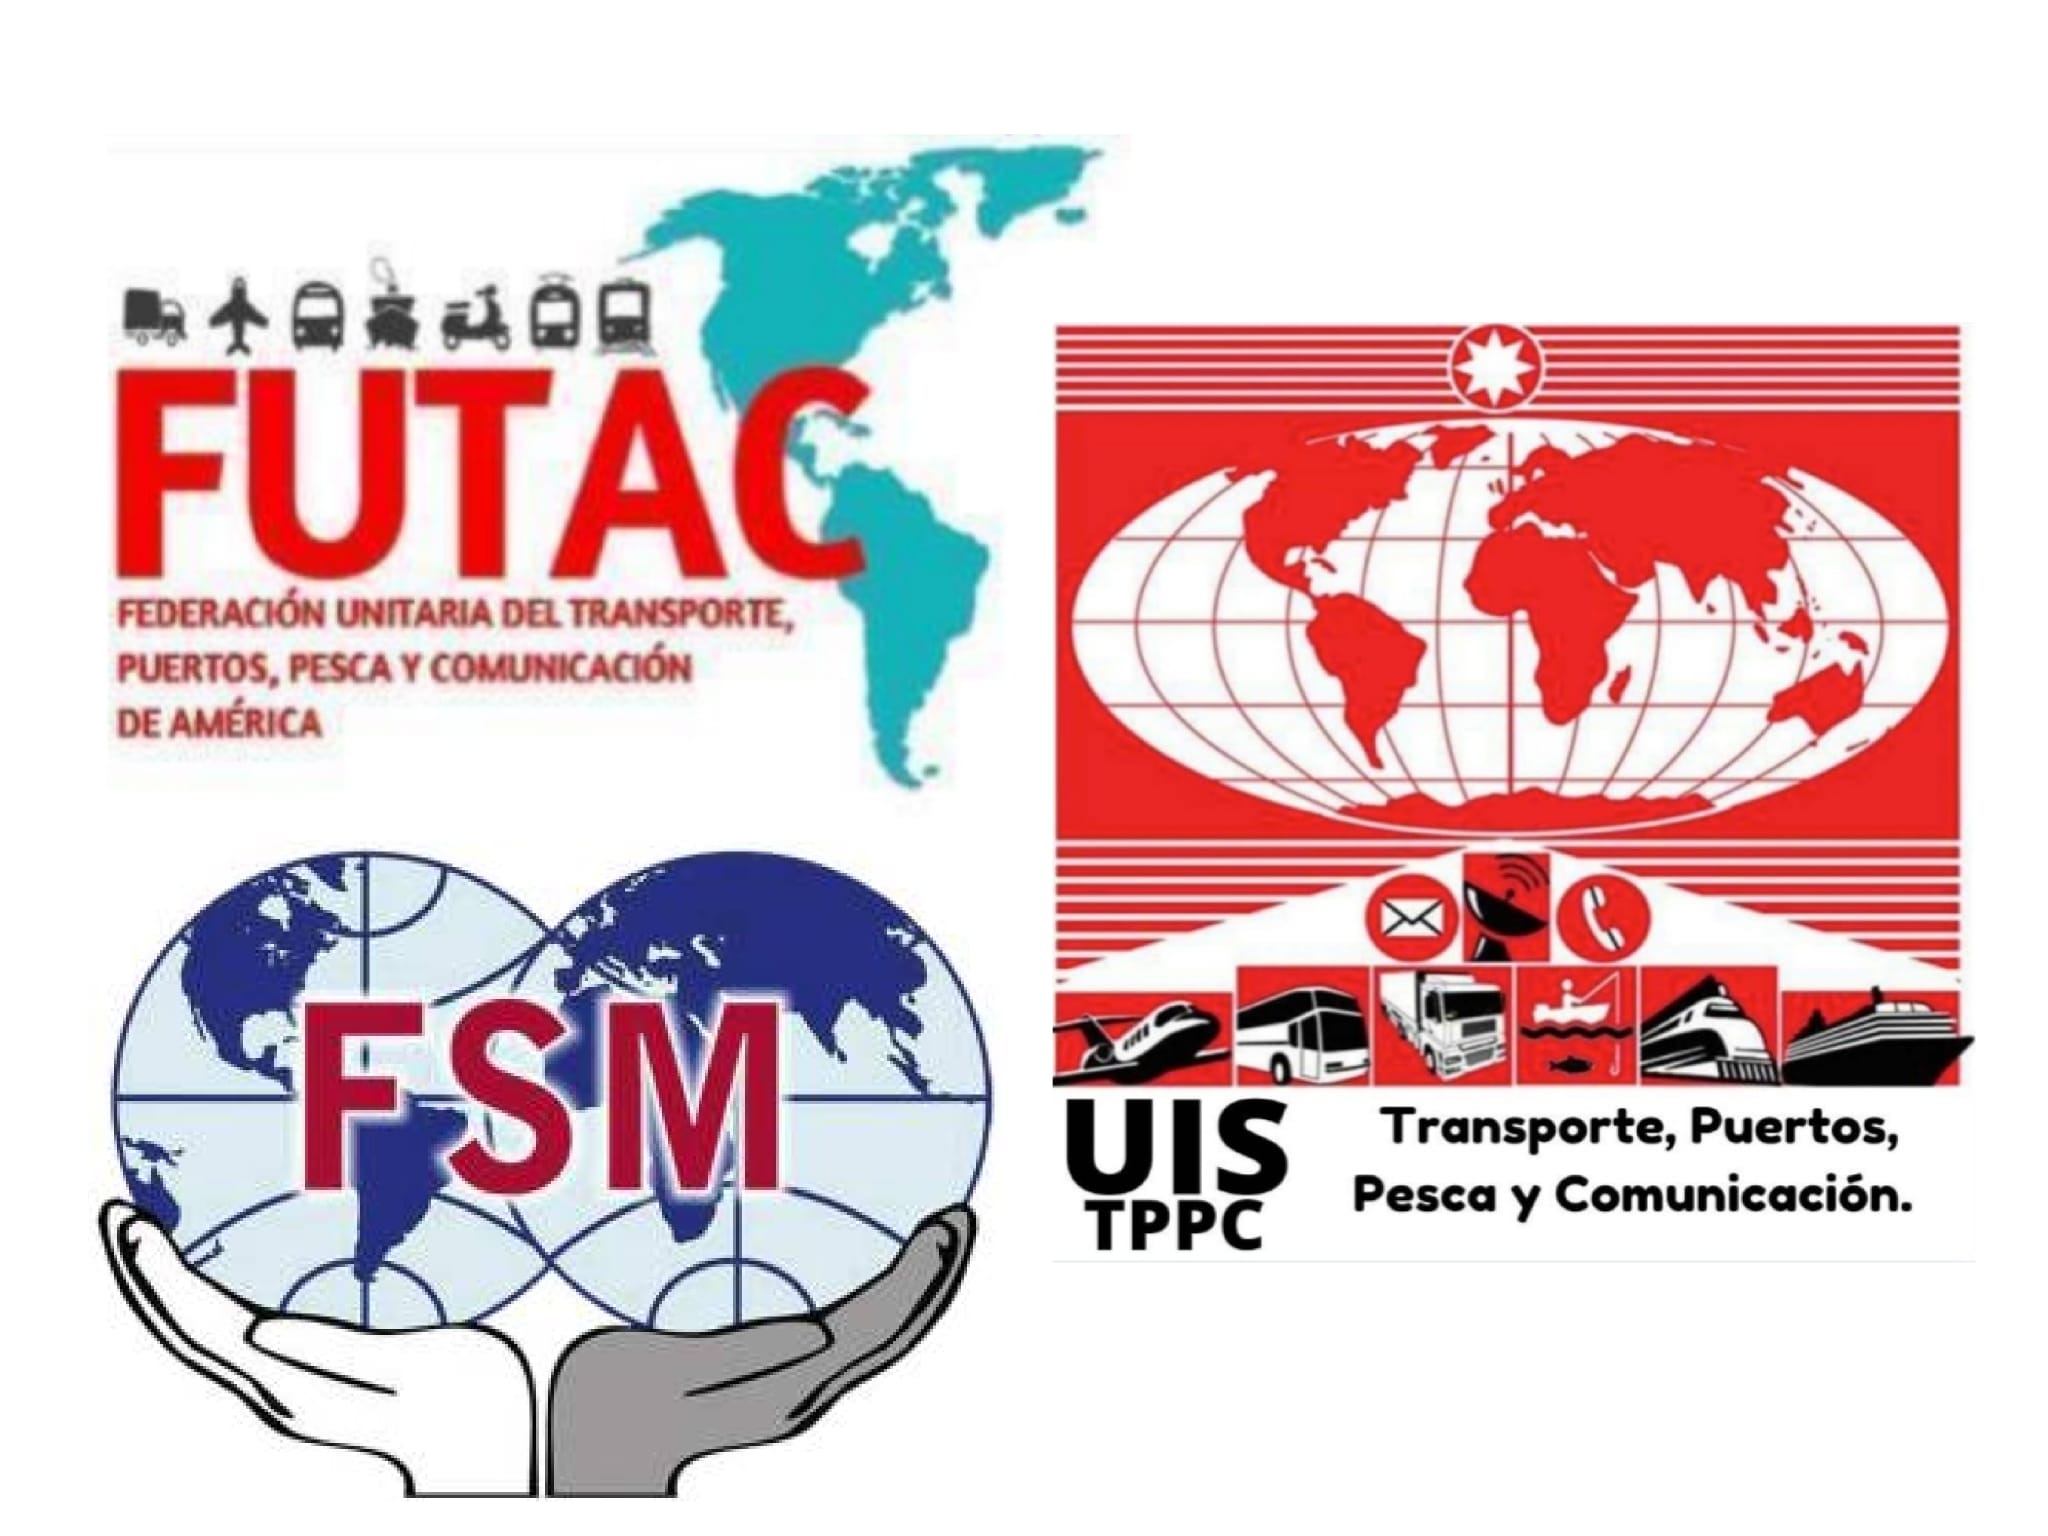 La Federación Unitaria del Transporte, Puertos, Pesca y Comunicación en América - FUTAC, muestran su solidaridad con las trabajadoras y trabajadores de Ford, en la factoría de  Valencia.